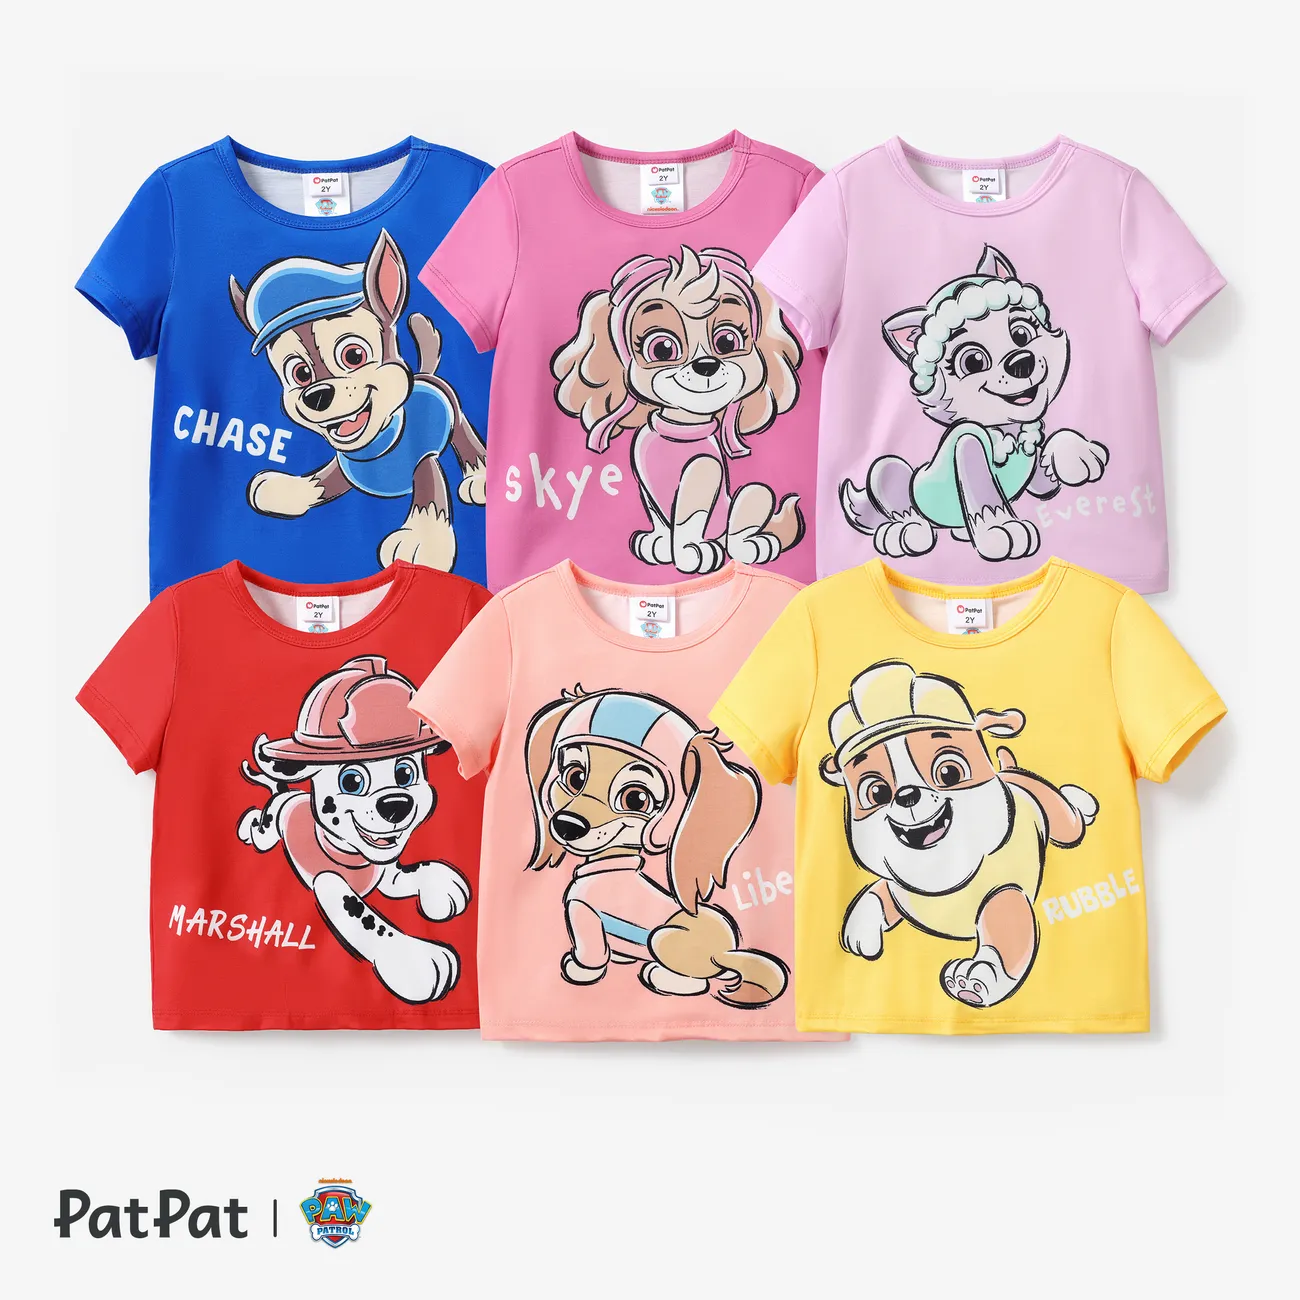 Patrulla de cachorros Pascua Unisex Infantil Camiseta Violeta claro big image 1